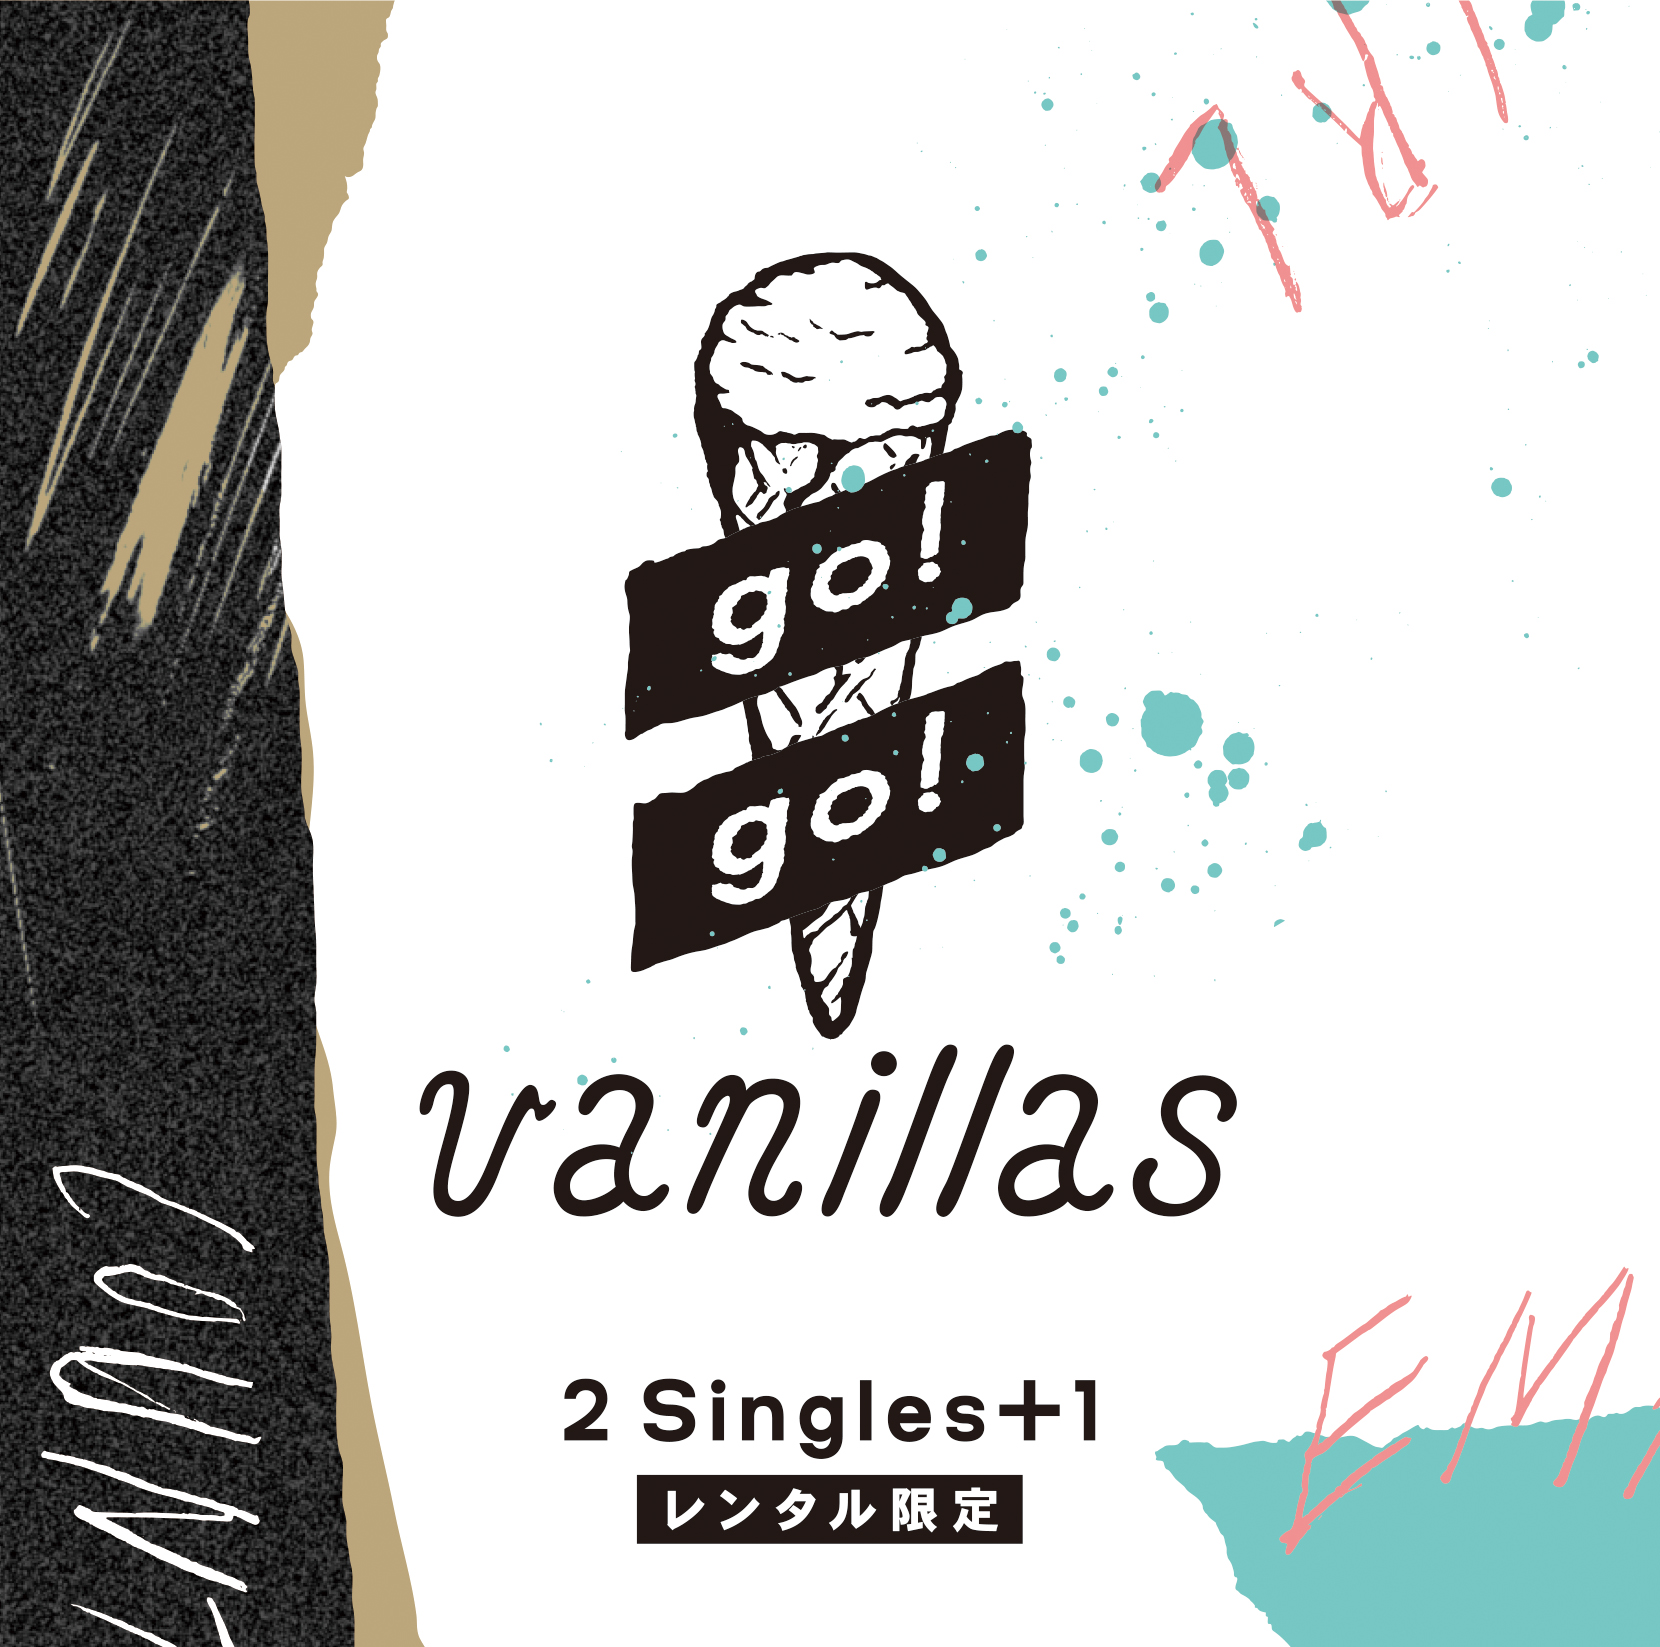 Tsutaya限定レンタルアルバム 2 Singles 1 10 28よりレンタル開始 ツタロックスペシャルライブ出演決定 Go Go Vanillas